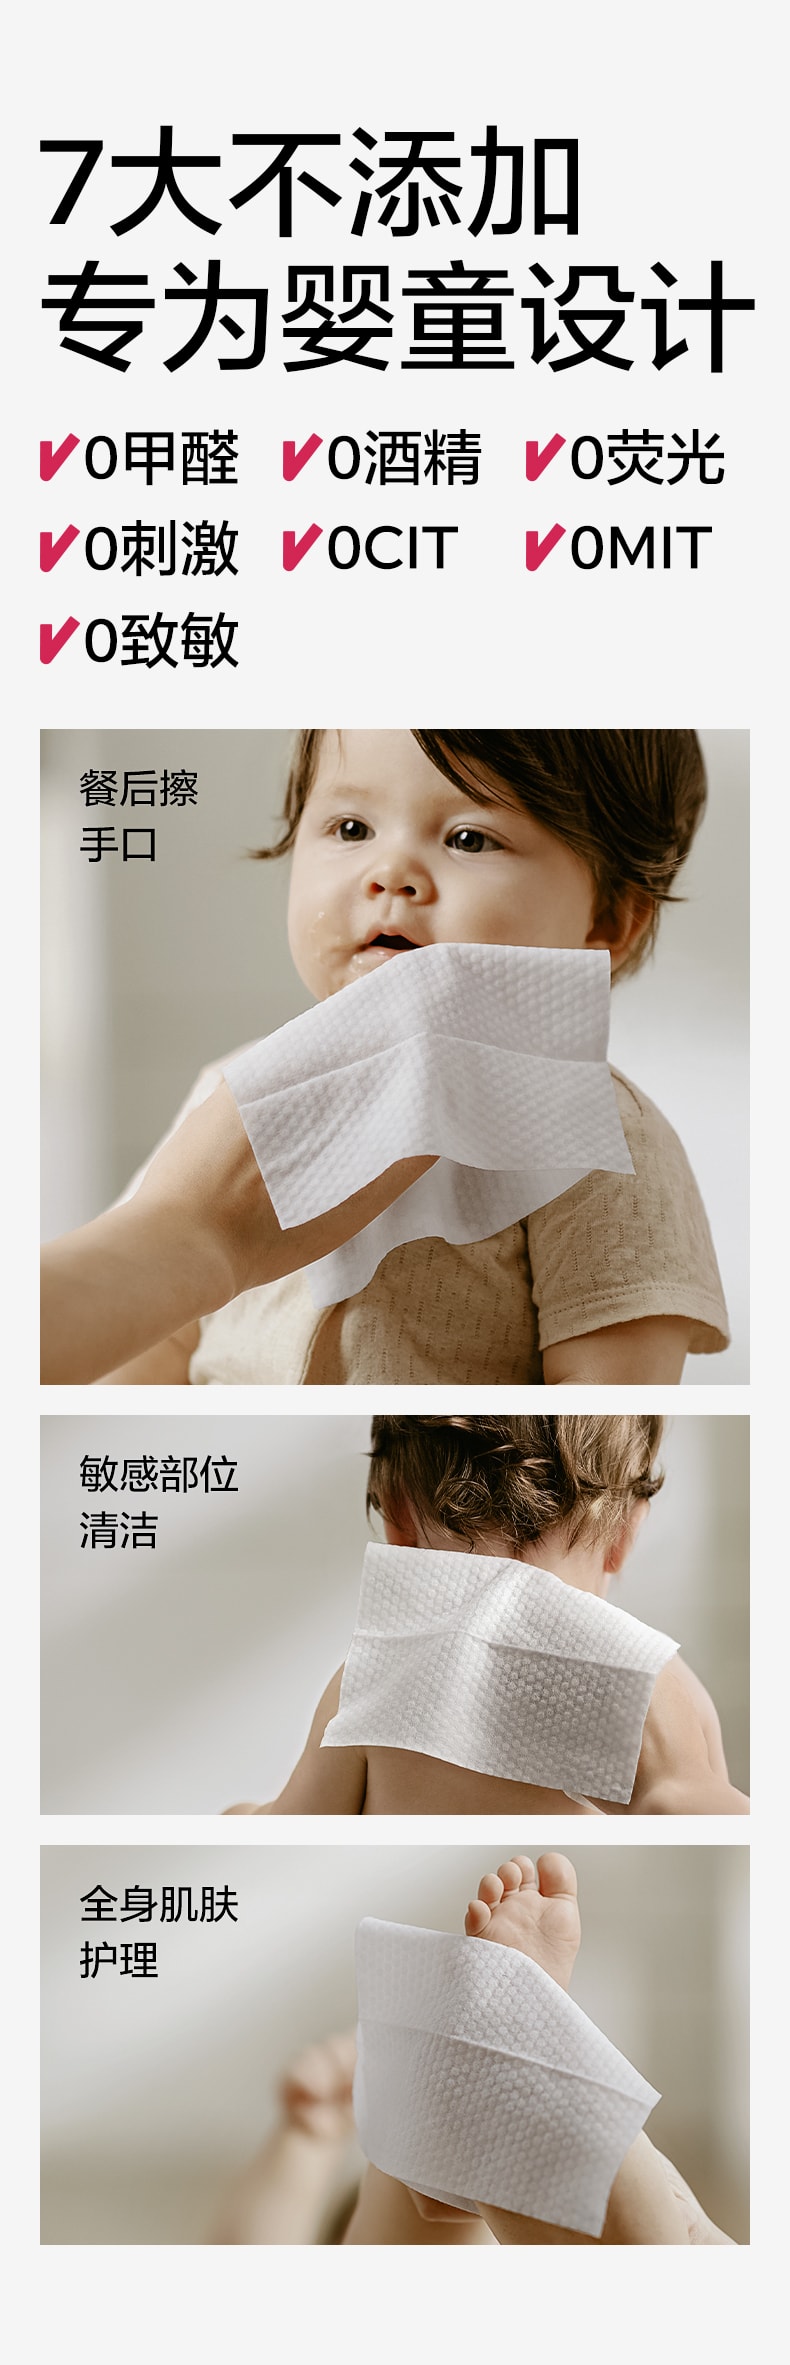 【中國直效郵件】Bc Babycare 嬰幼兒手口濕紙巾 200mm*150mm-80抽/包